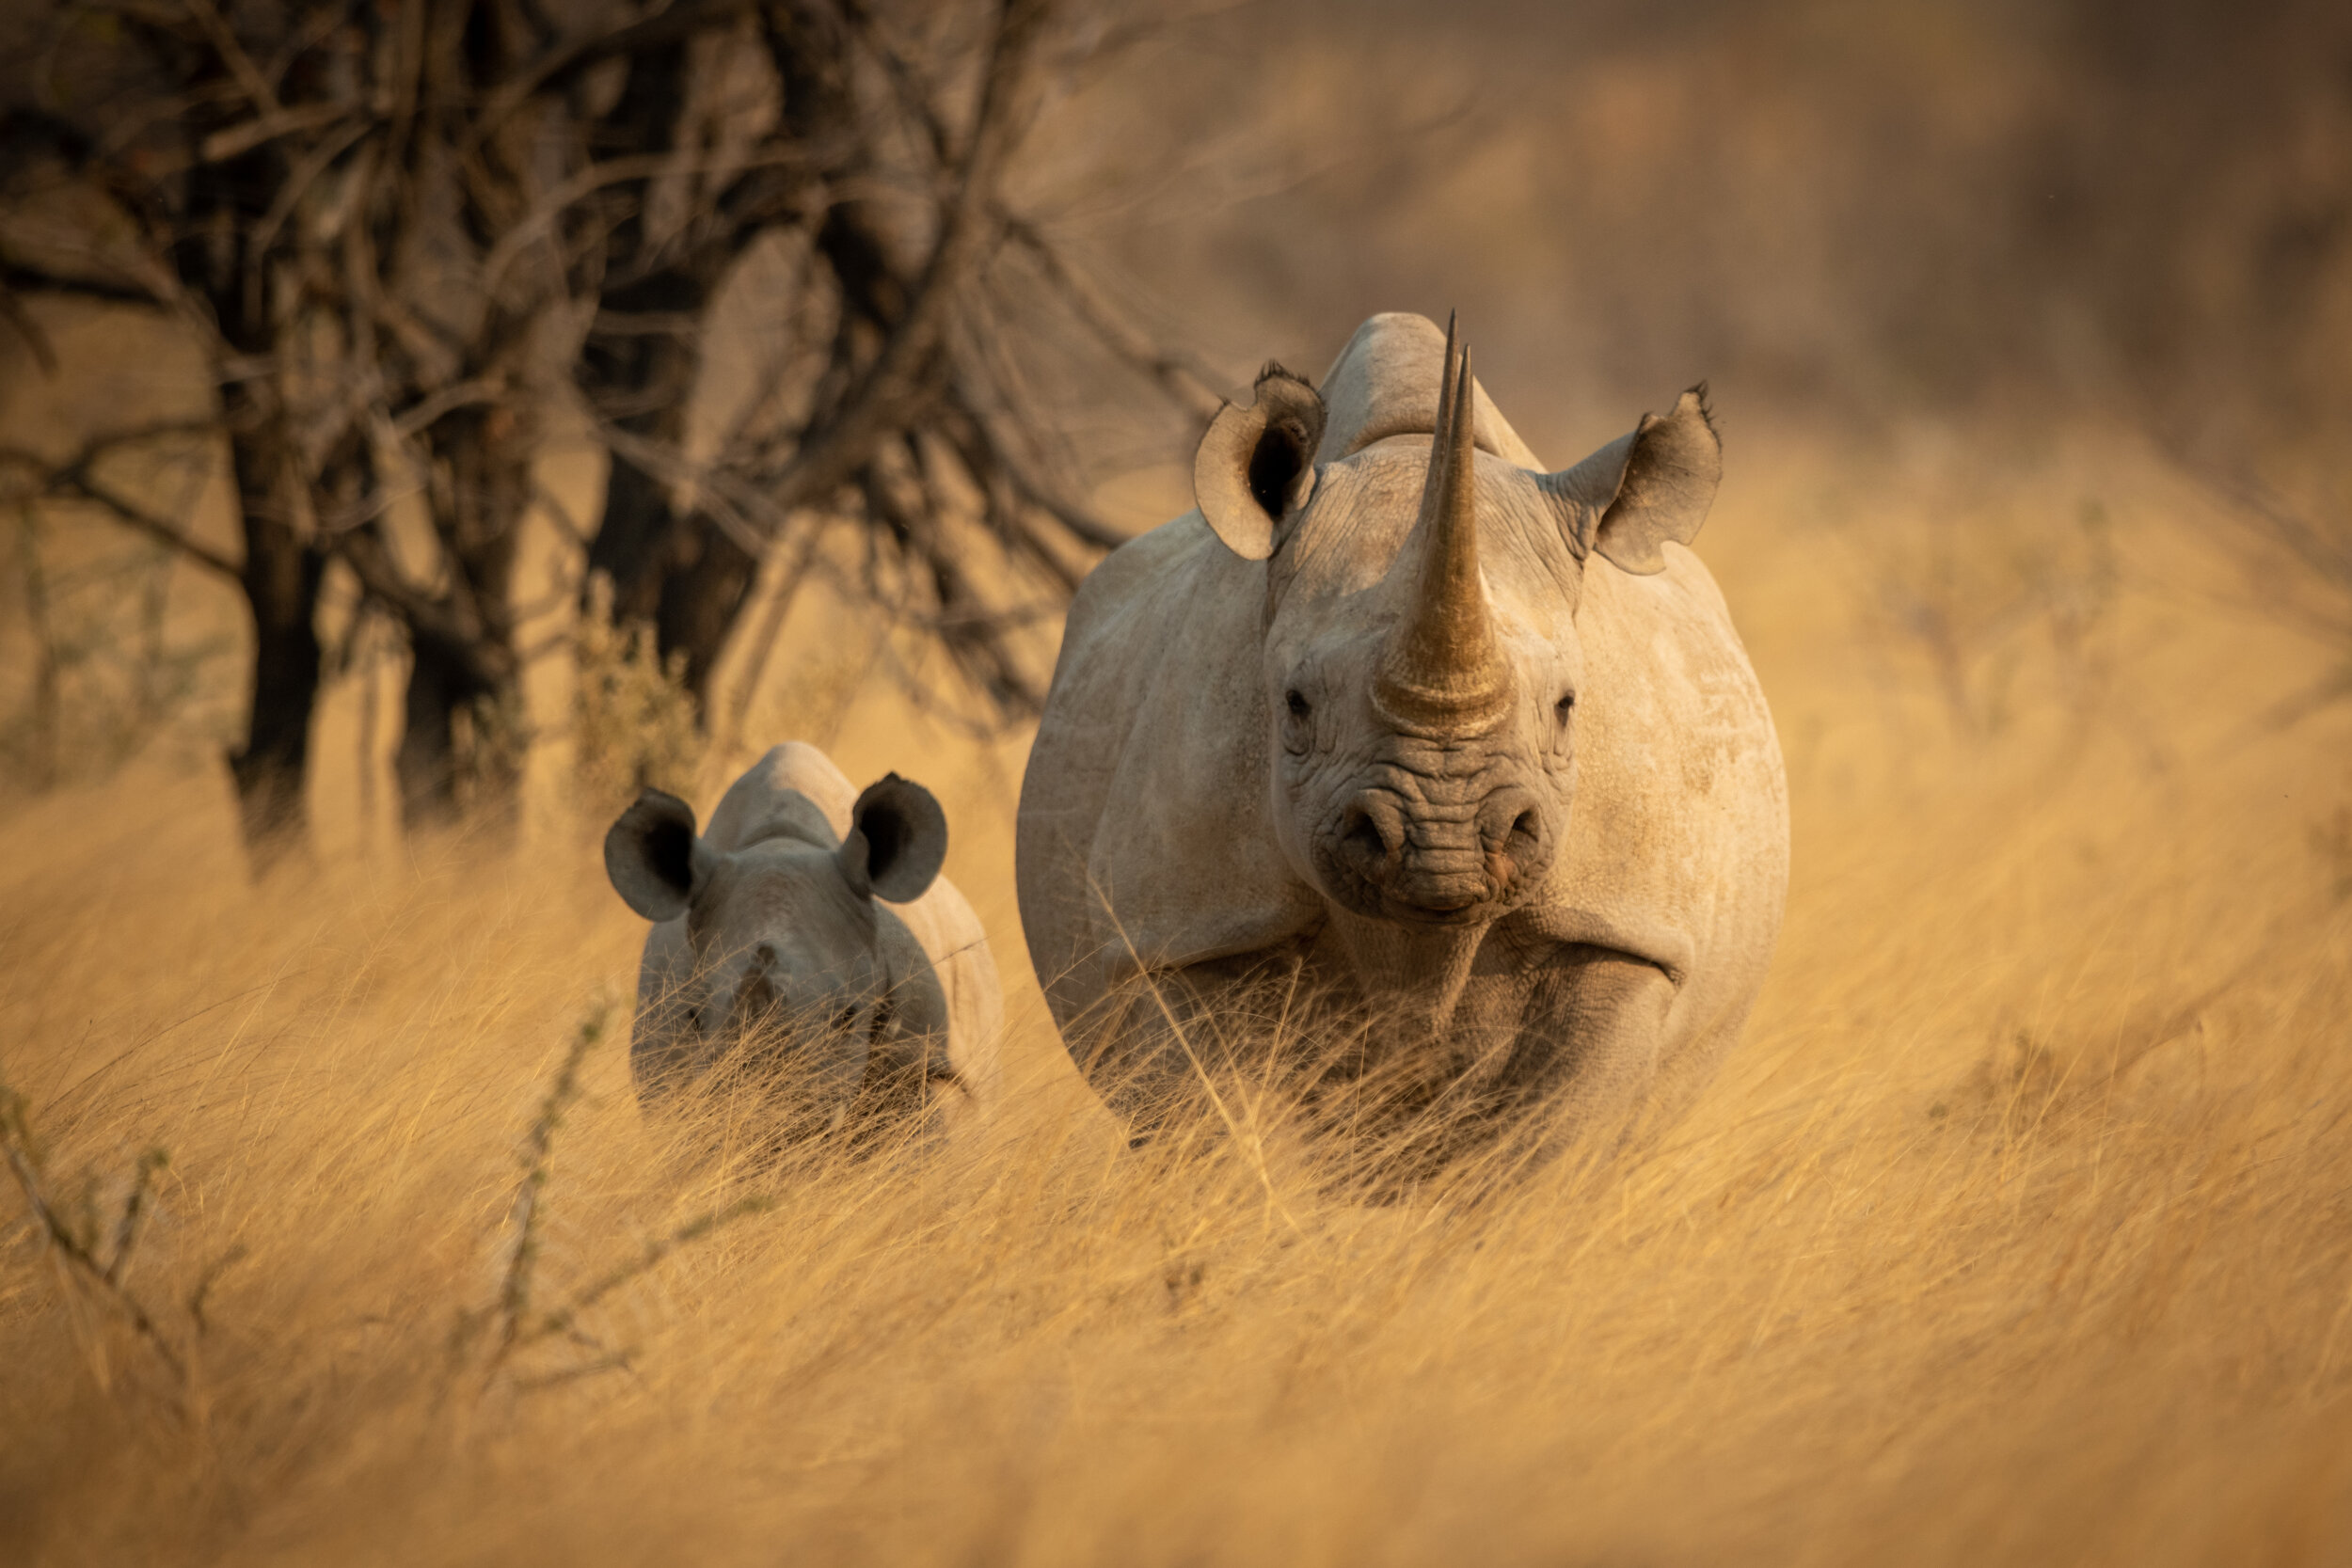 Namibian Rhinos